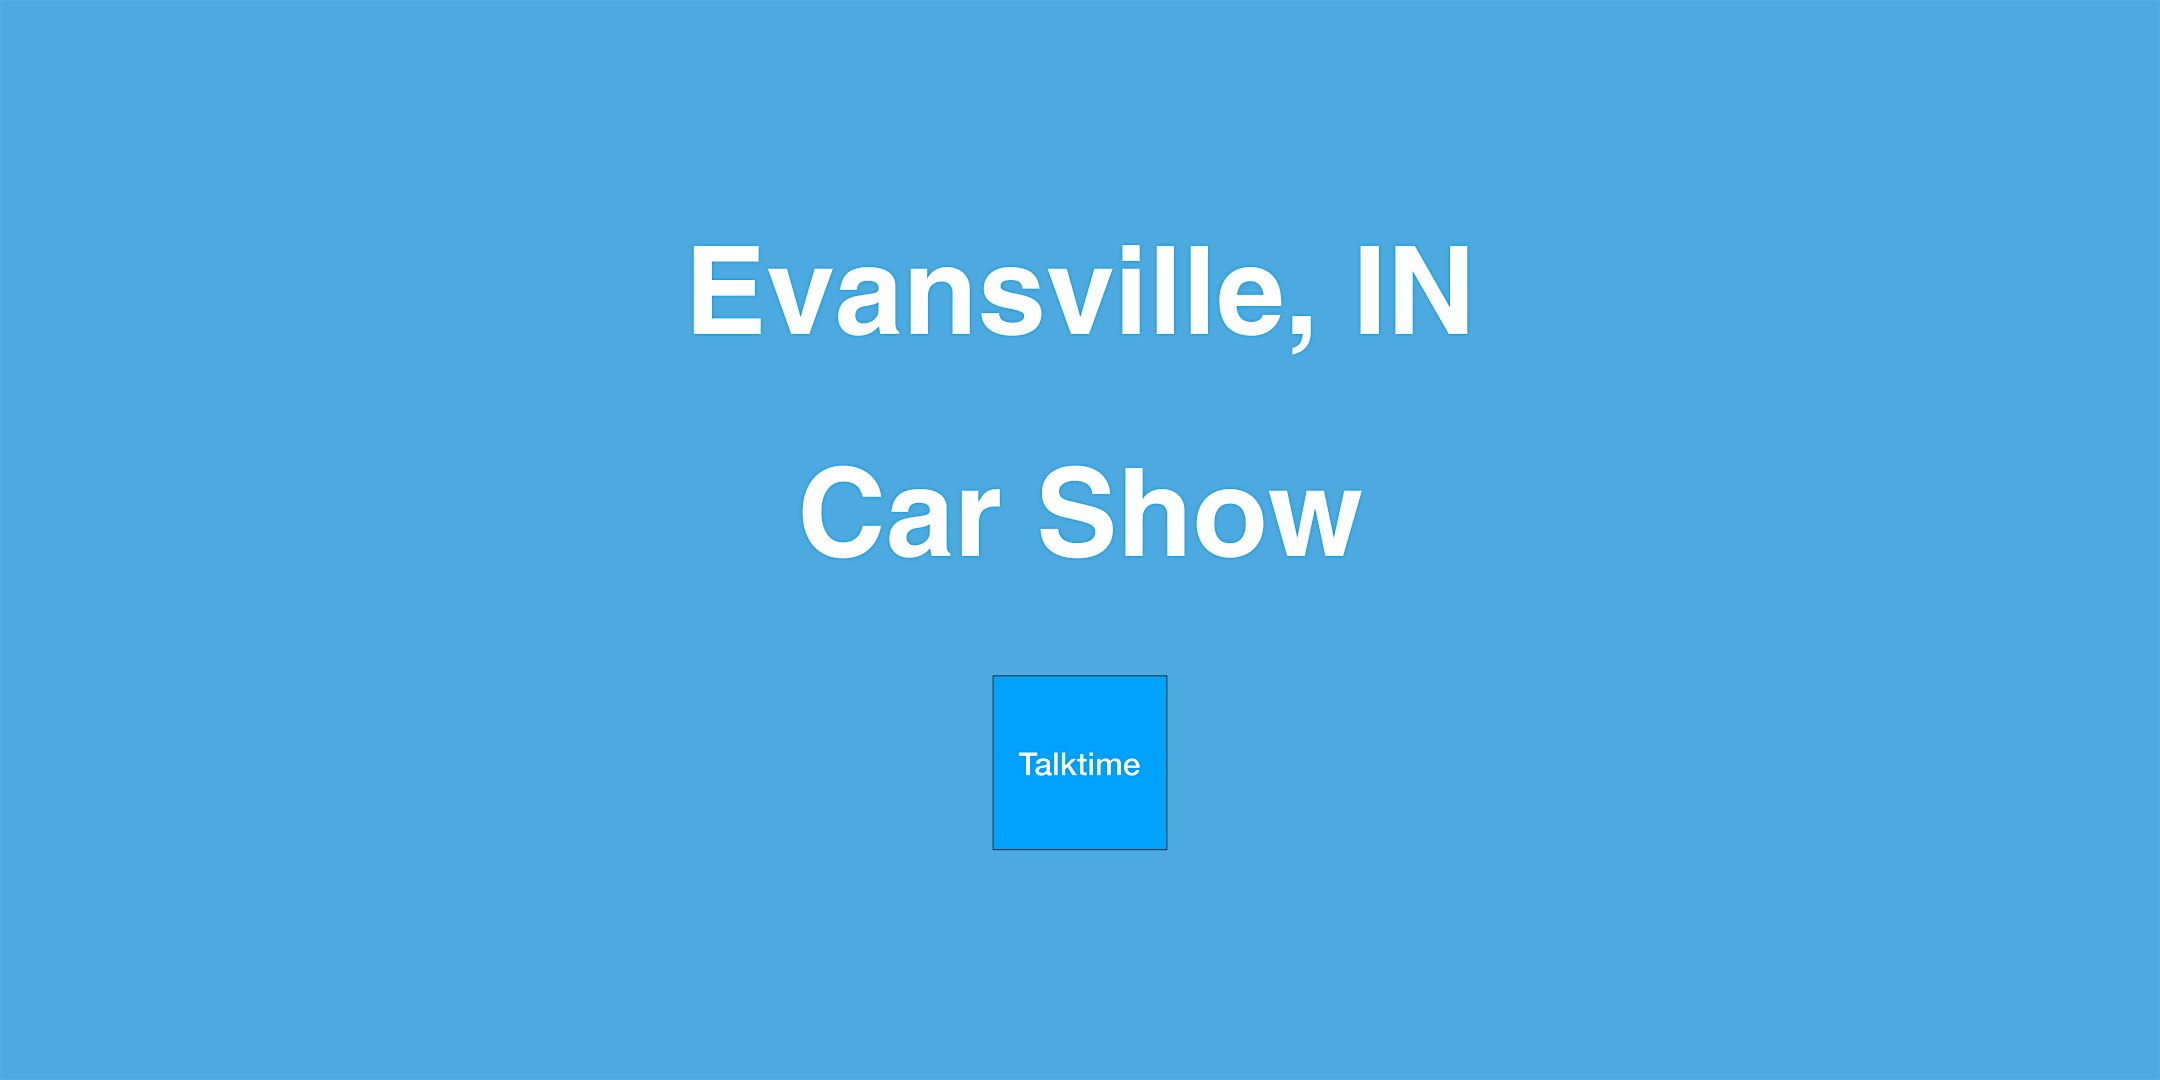 Car Show - Evansville